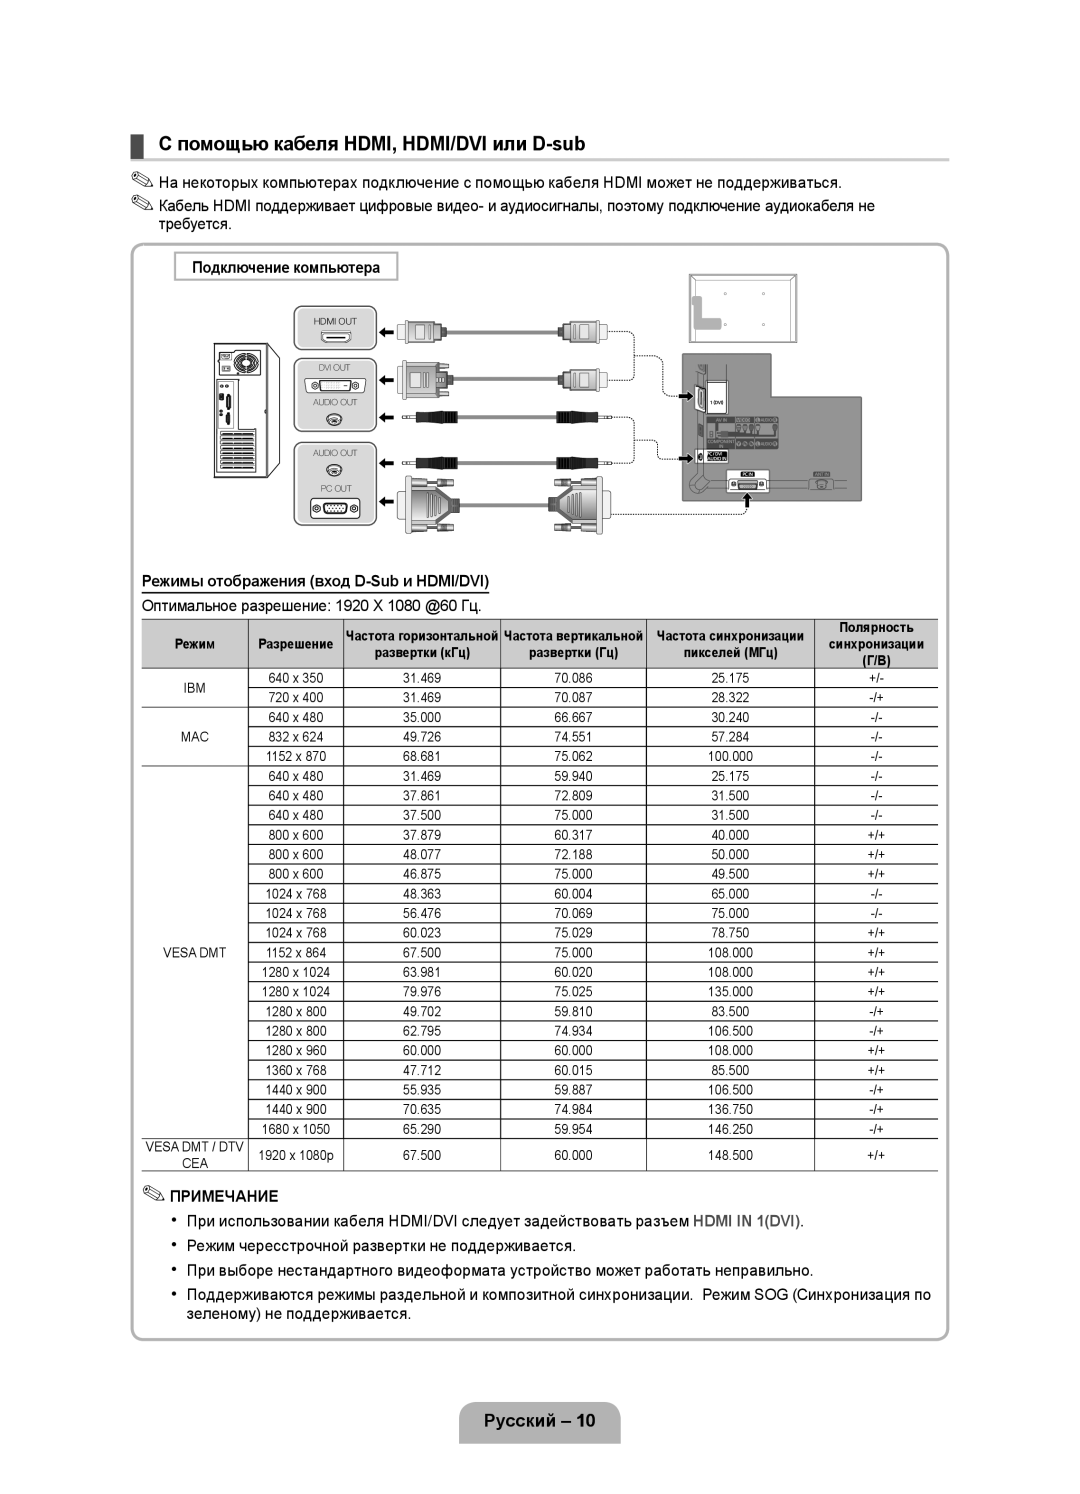 Samsung UE37D5000PWXZG manual С помощью кабеля HDMI, HDMI/DVI или D-sub, Русский, Подключение компьютера, Примечание 